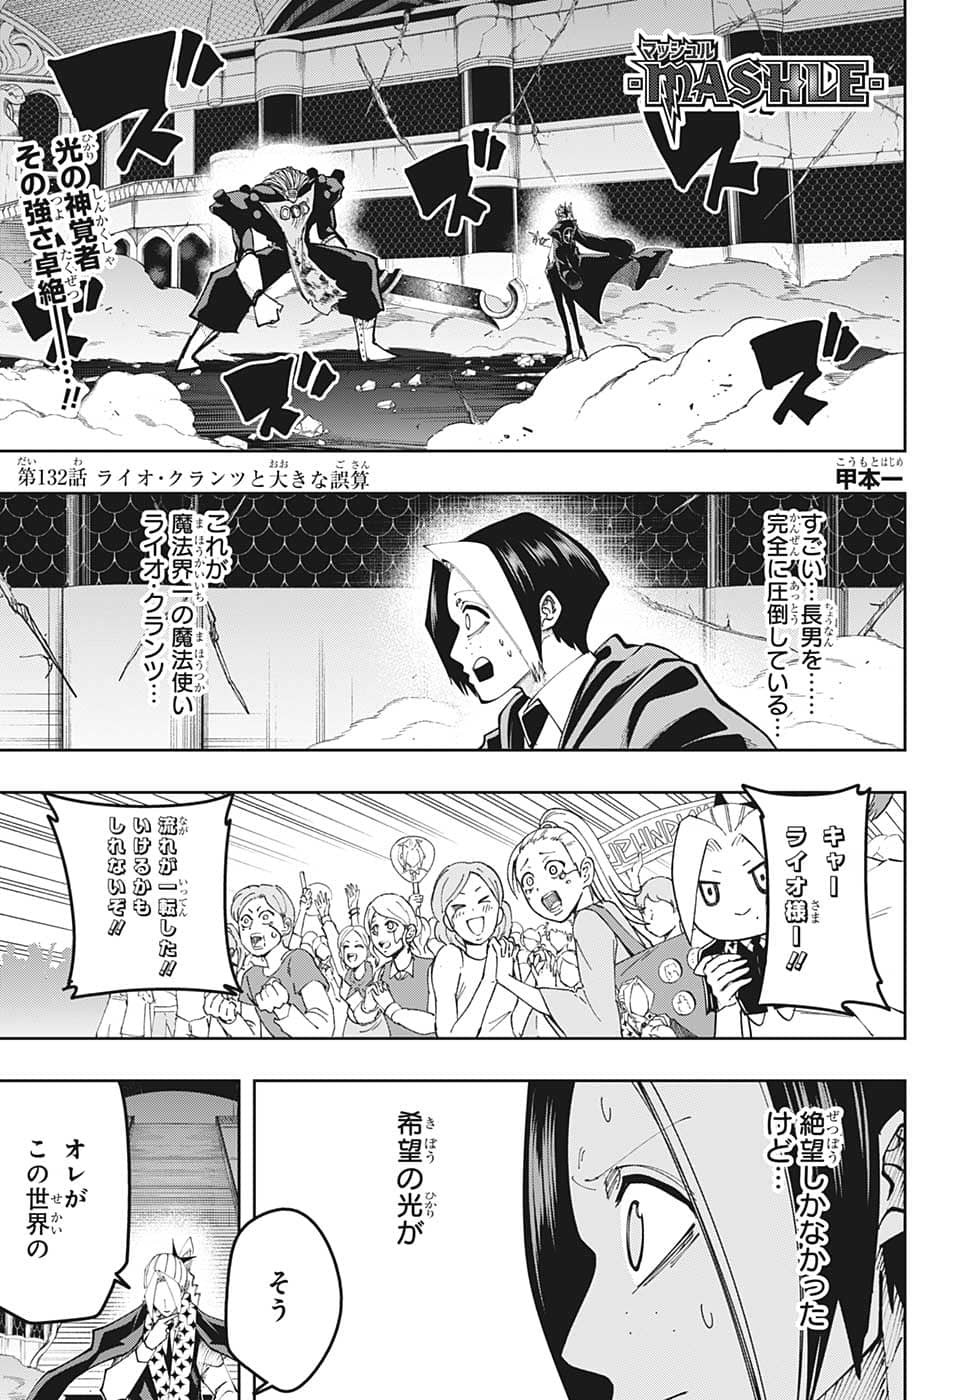 マッシュル -MASHLE- 第132話 Raw - Mangakoma - 漫画koma - 漫画raw